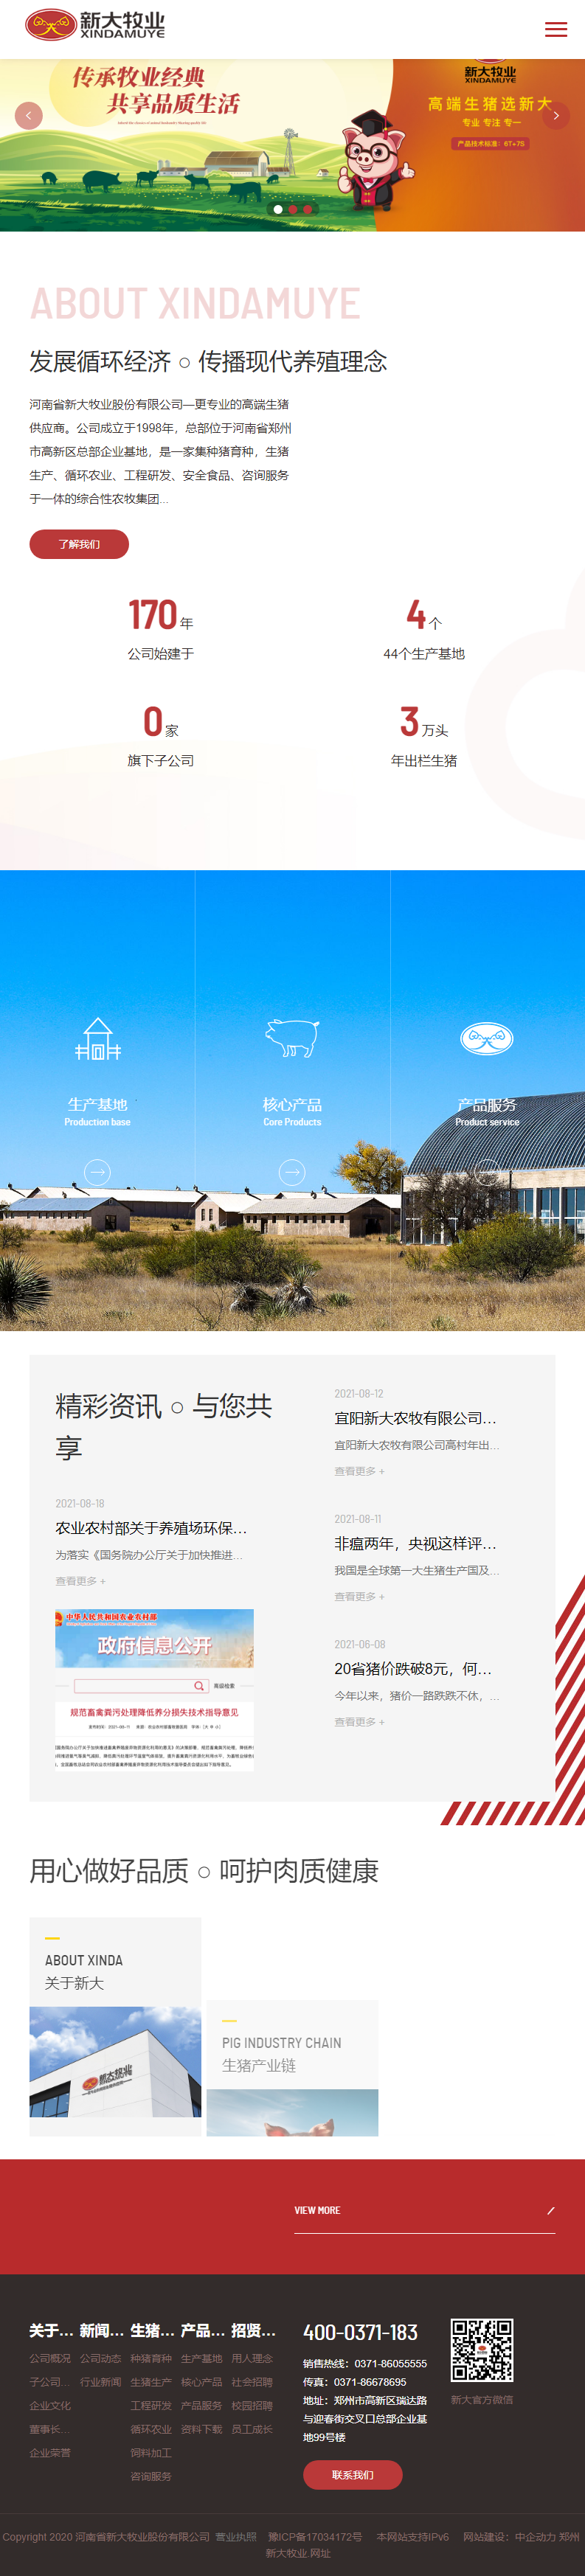 河南省新大牧业股份有限公司网站案例